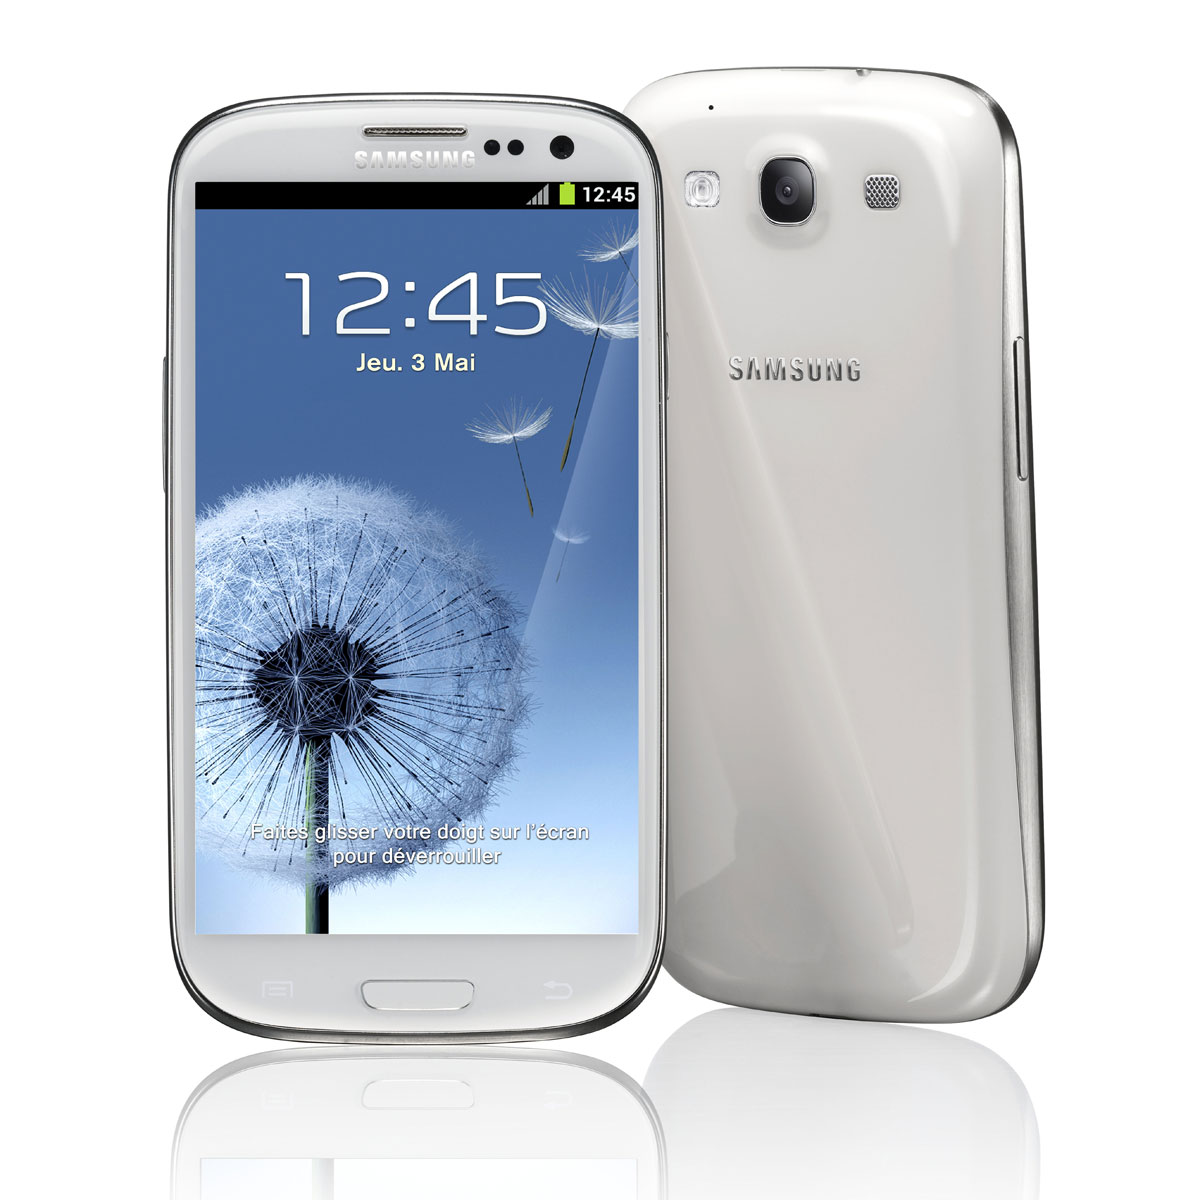 Samsung Galaxy SIII ¿el 6 de marzo de 2012?